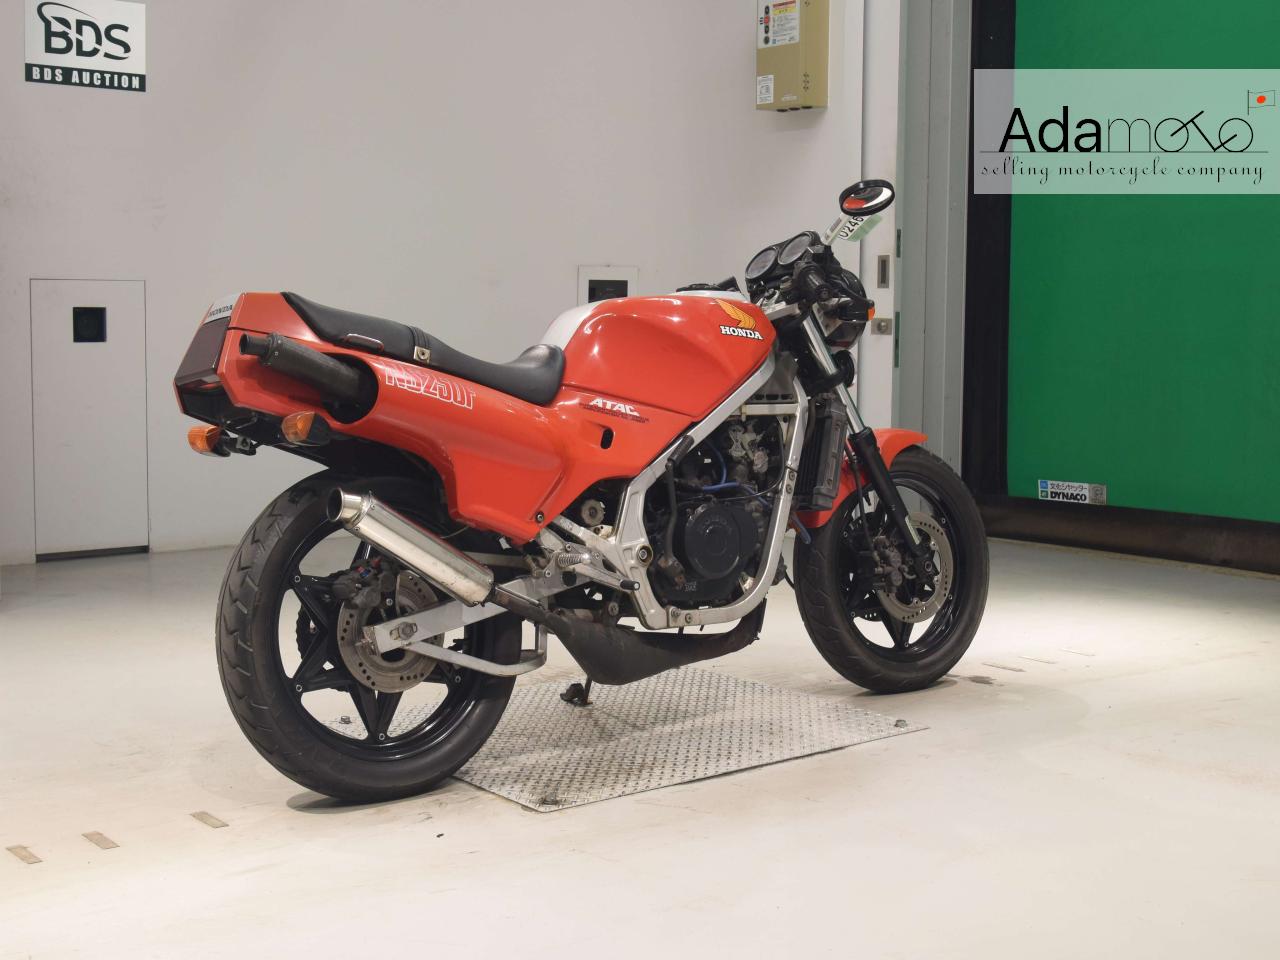 Honda NS250F - Adamoto - Motorcycles from Japan